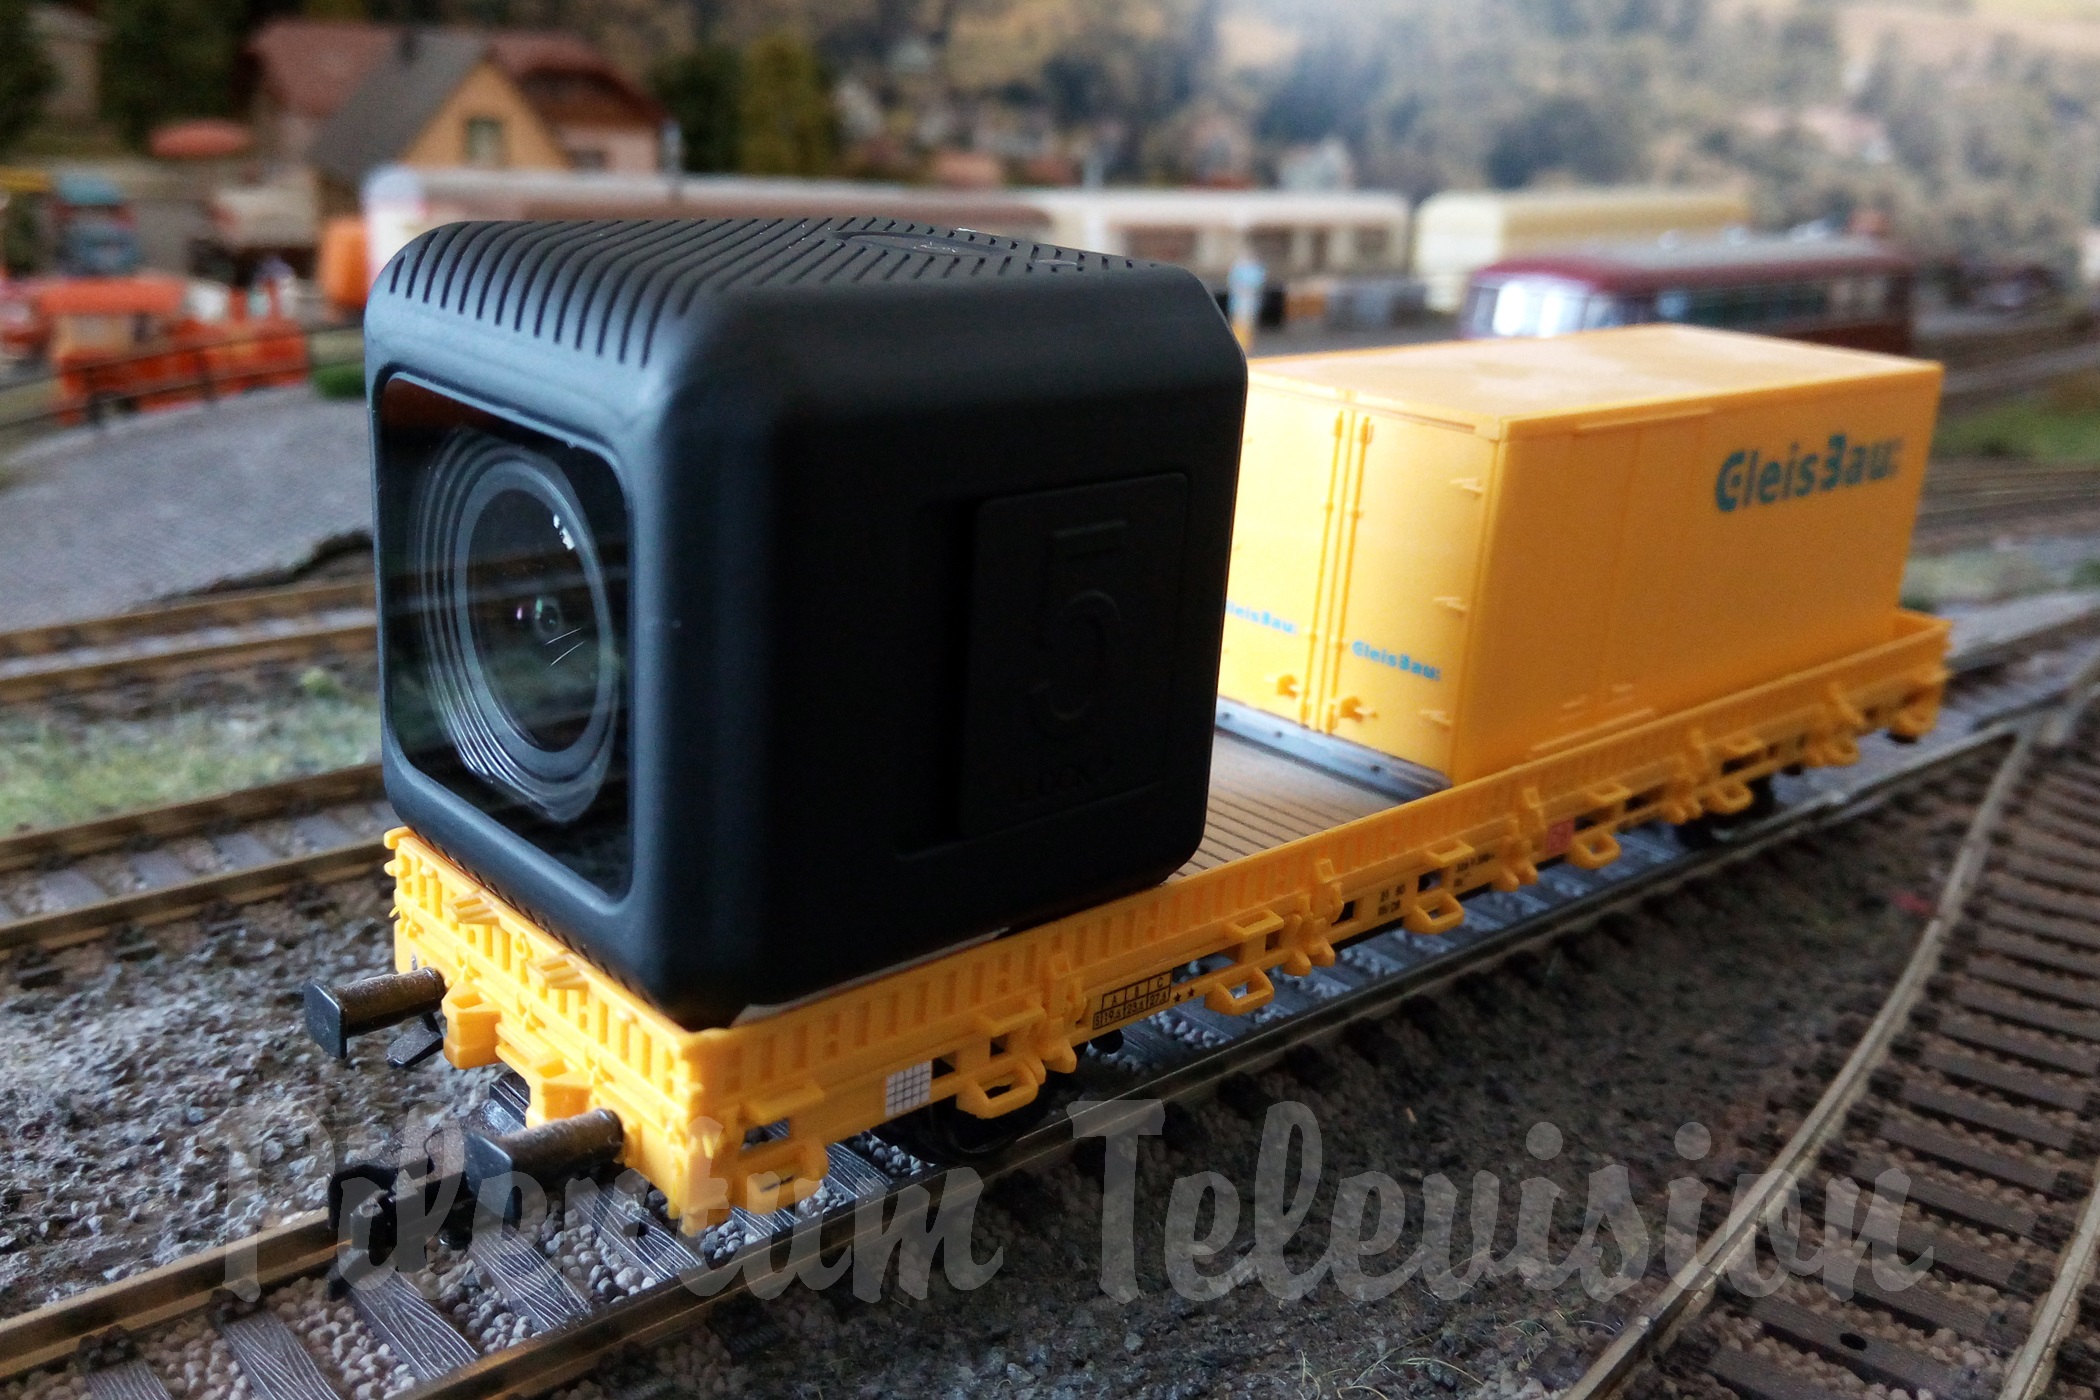 Puteți instala cu ușurință această cameră video pe o vagon de cale ferată pentru a face fotografii și videoclipuri. Cameră Video Runcam 5 Orange a fost gandita intr-o carcasa extrem de mica.